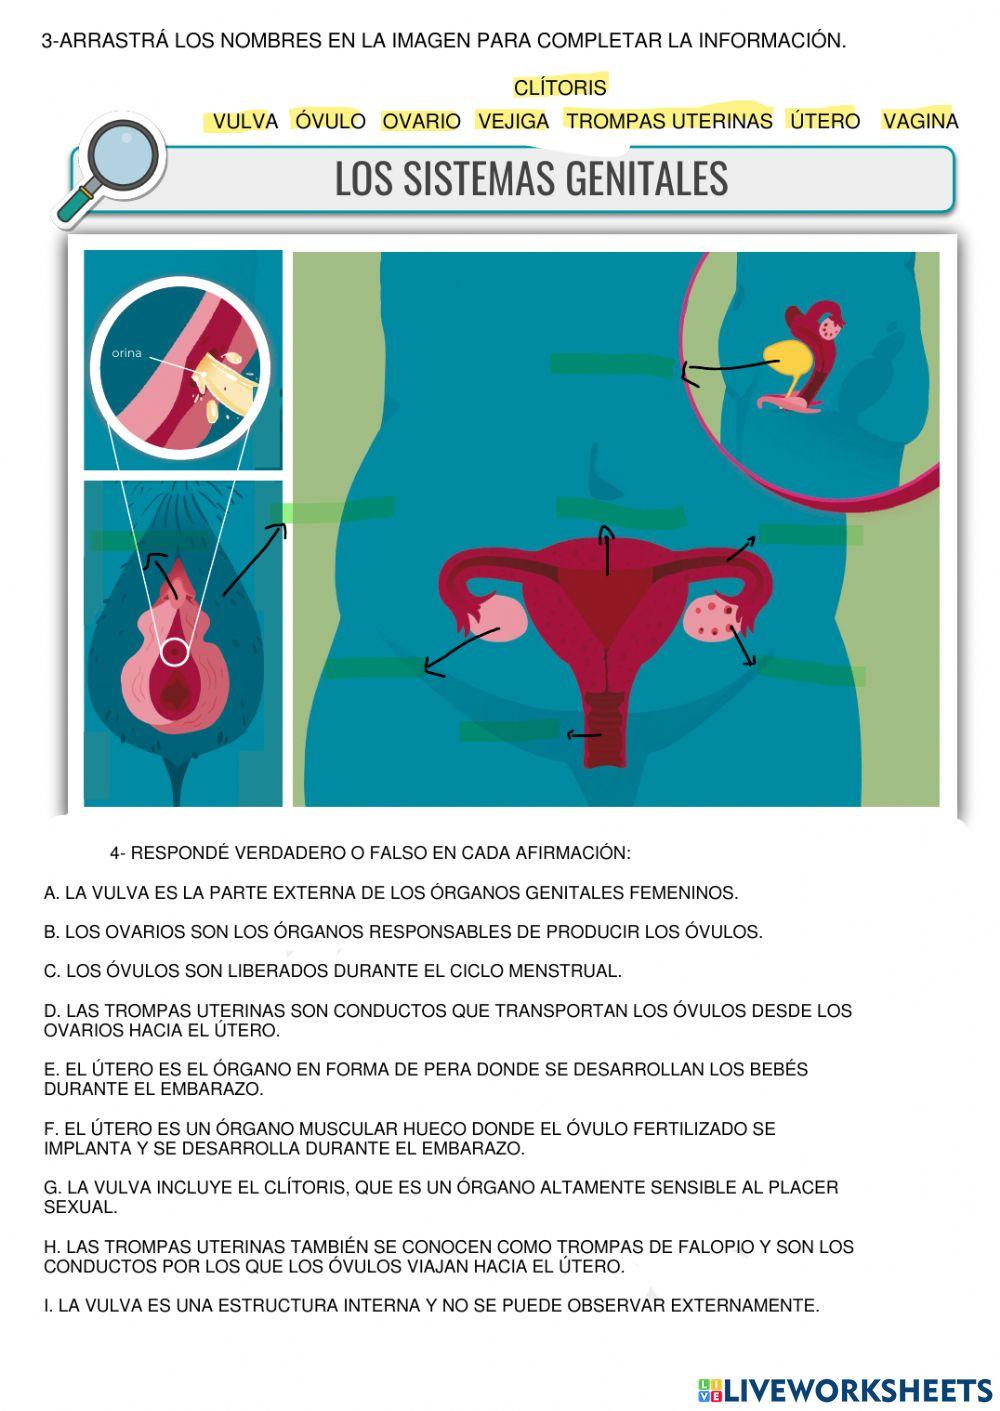 Sistema de genitales